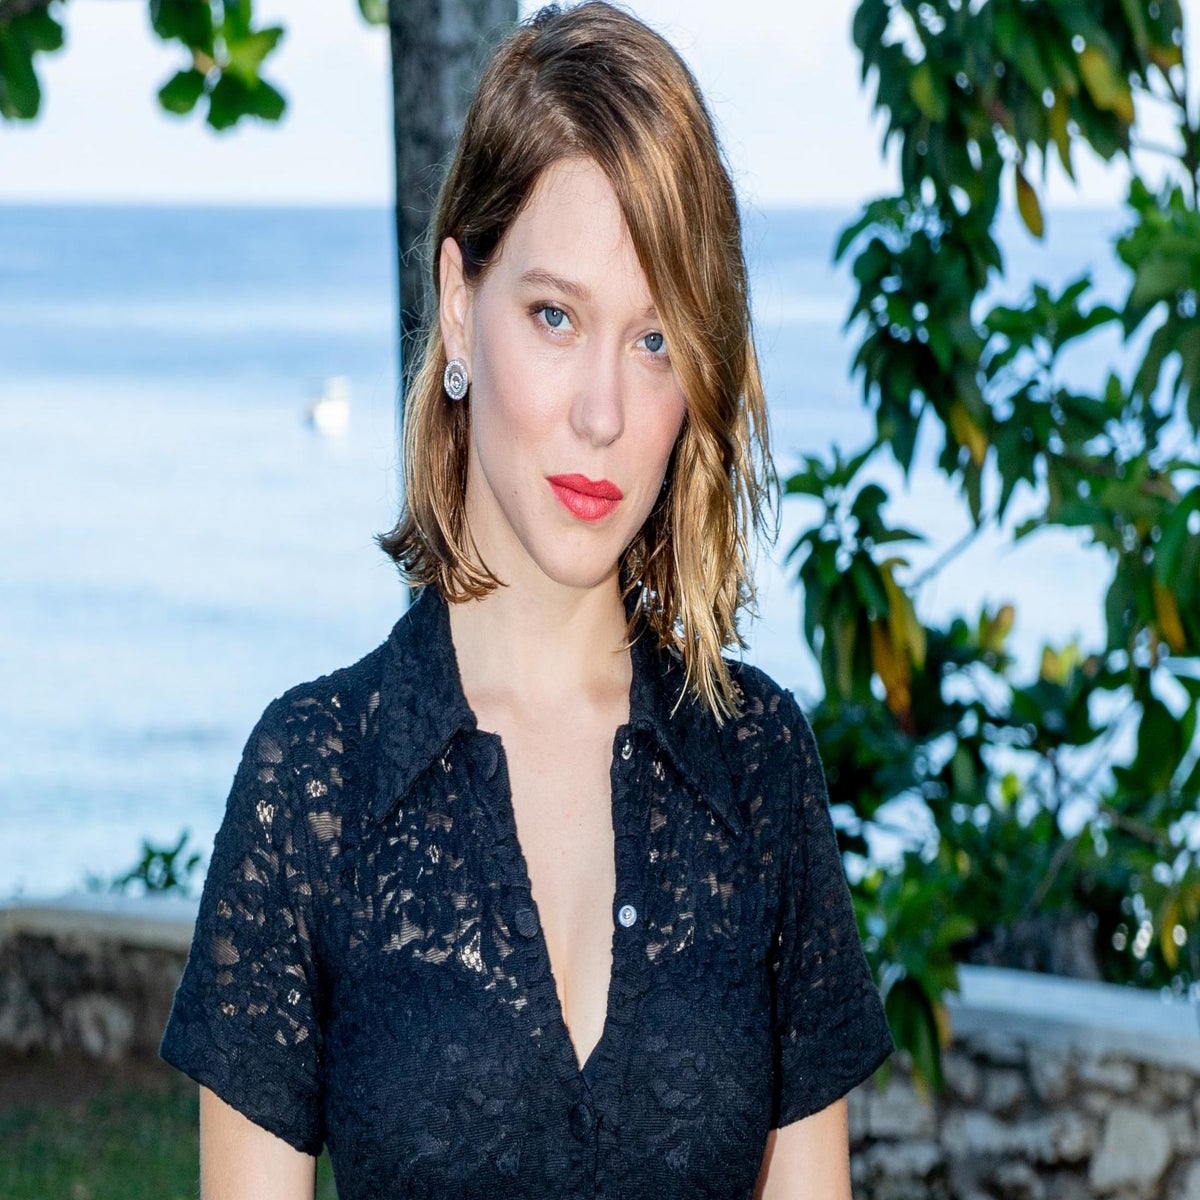 Louis Vuitton names Bond girl Léa Seydoux as the new face of the